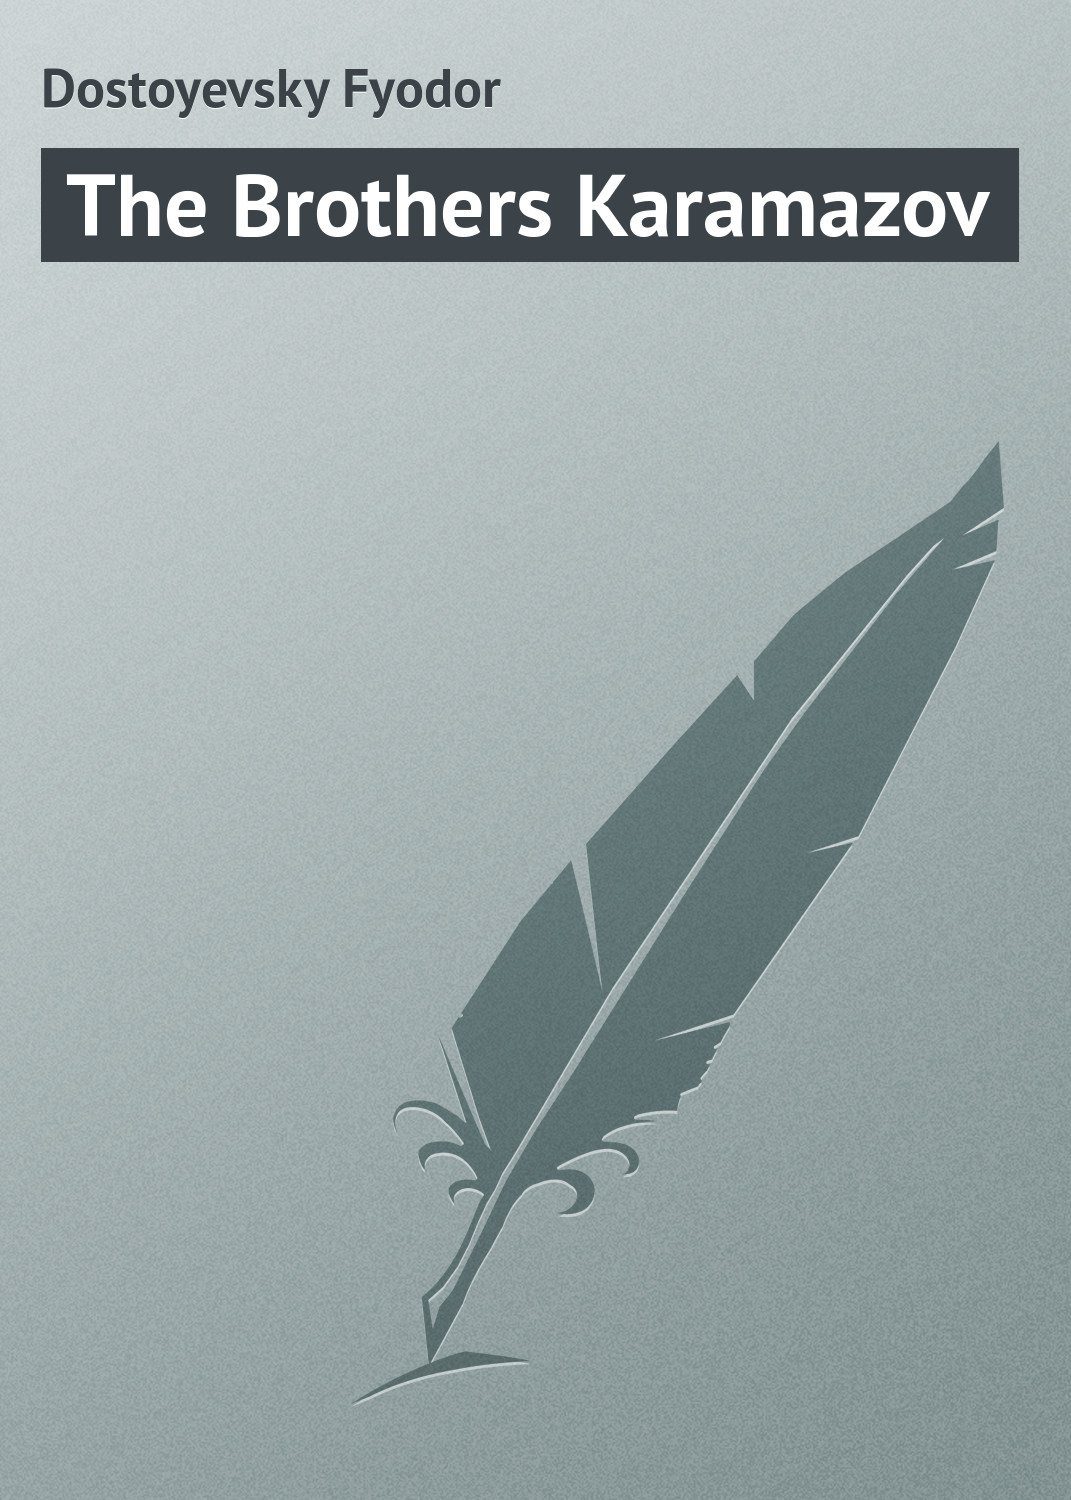 Книга The Brothers Karamazov из серии , созданная Fyodor Dostoyevsky, может относится к жанру Иностранные языки, Русская классика. Стоимость электронной книги The Brothers Karamazov с идентификатором 23158323 составляет 5.99 руб.